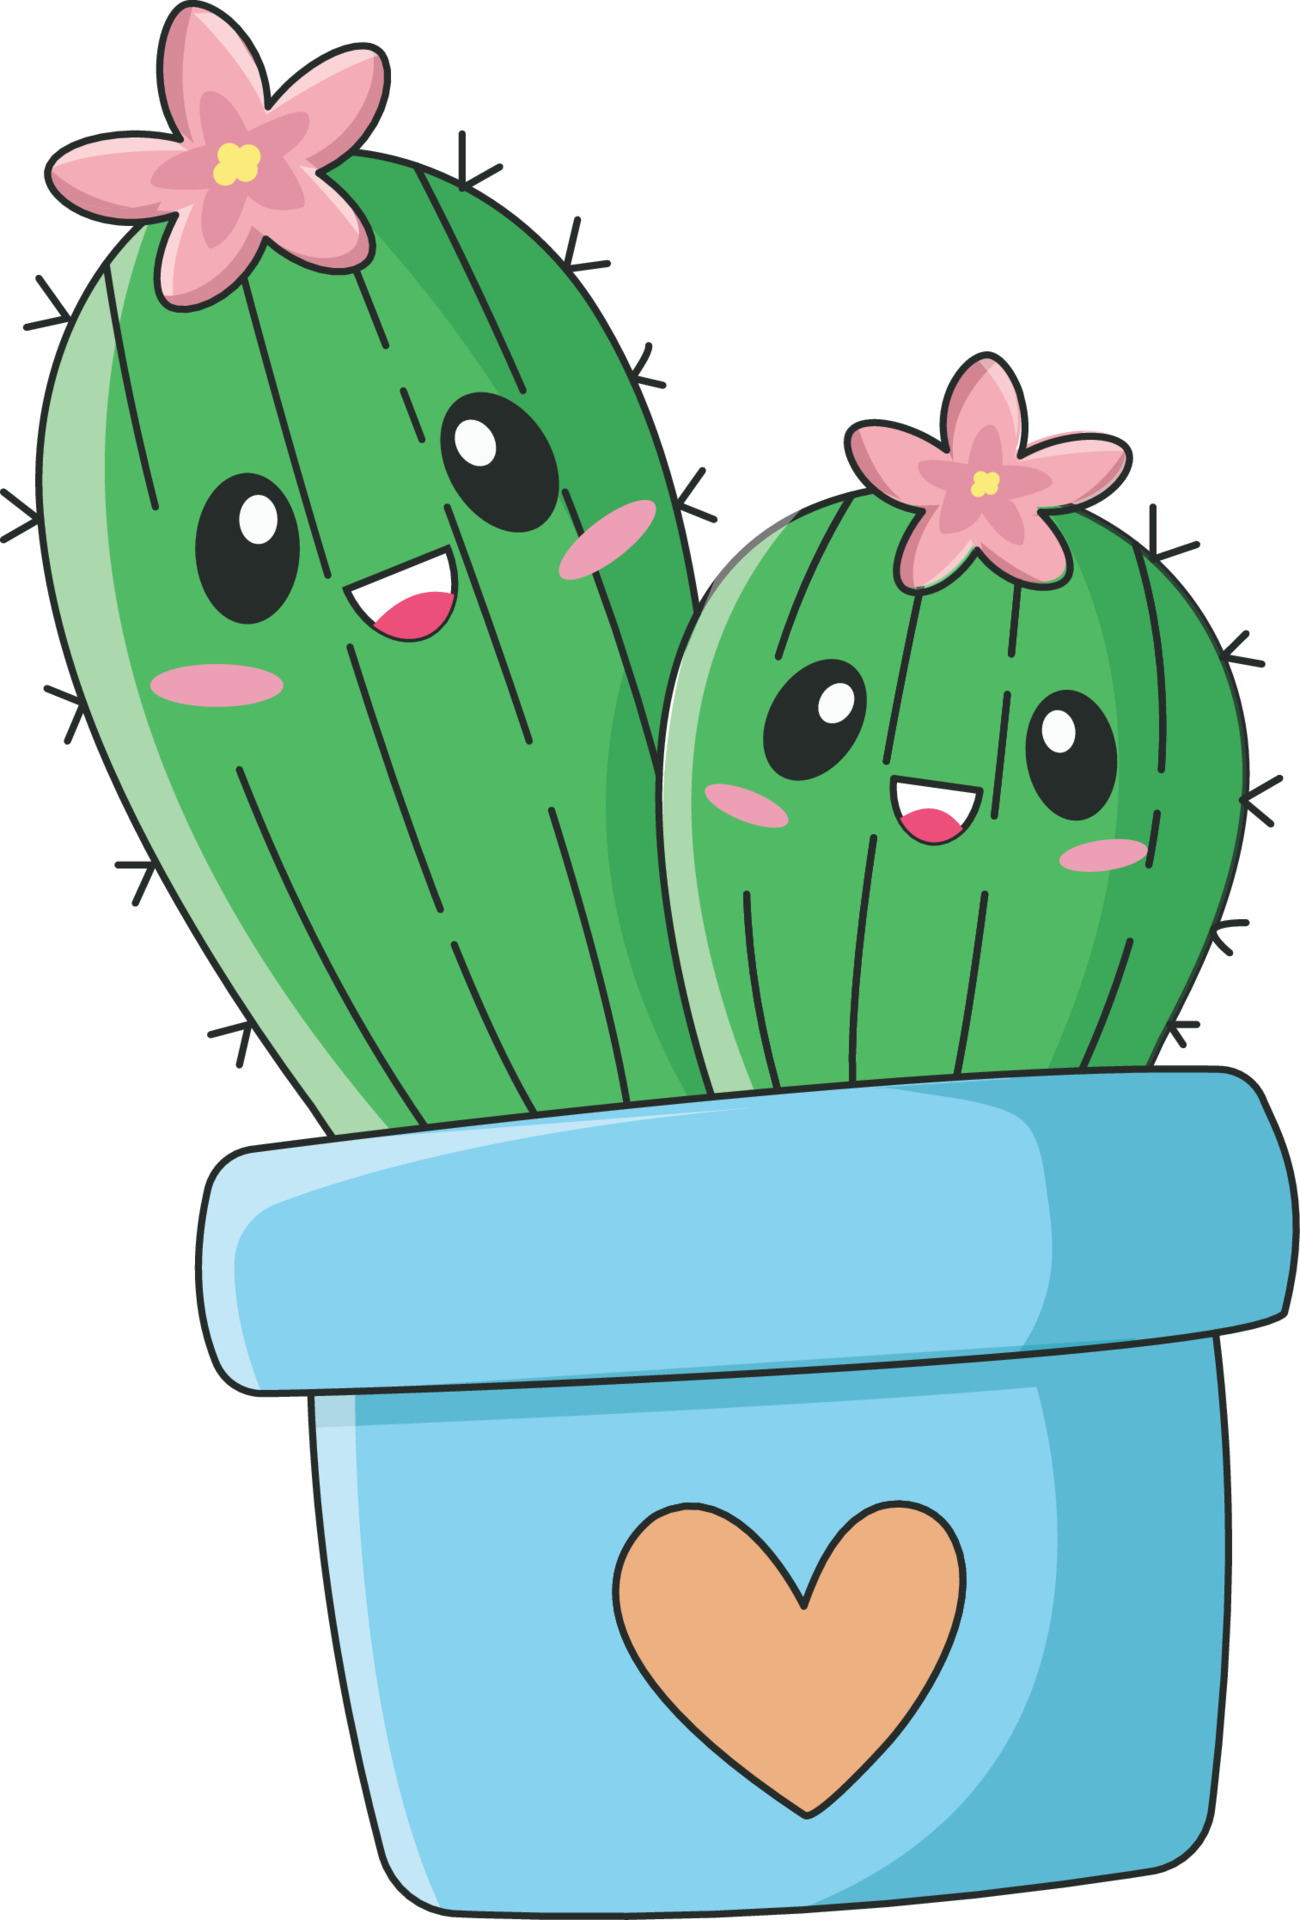 Cactus Kawaii Vectores, Iconos, Gráficos y Fondos para Descargar Gratis